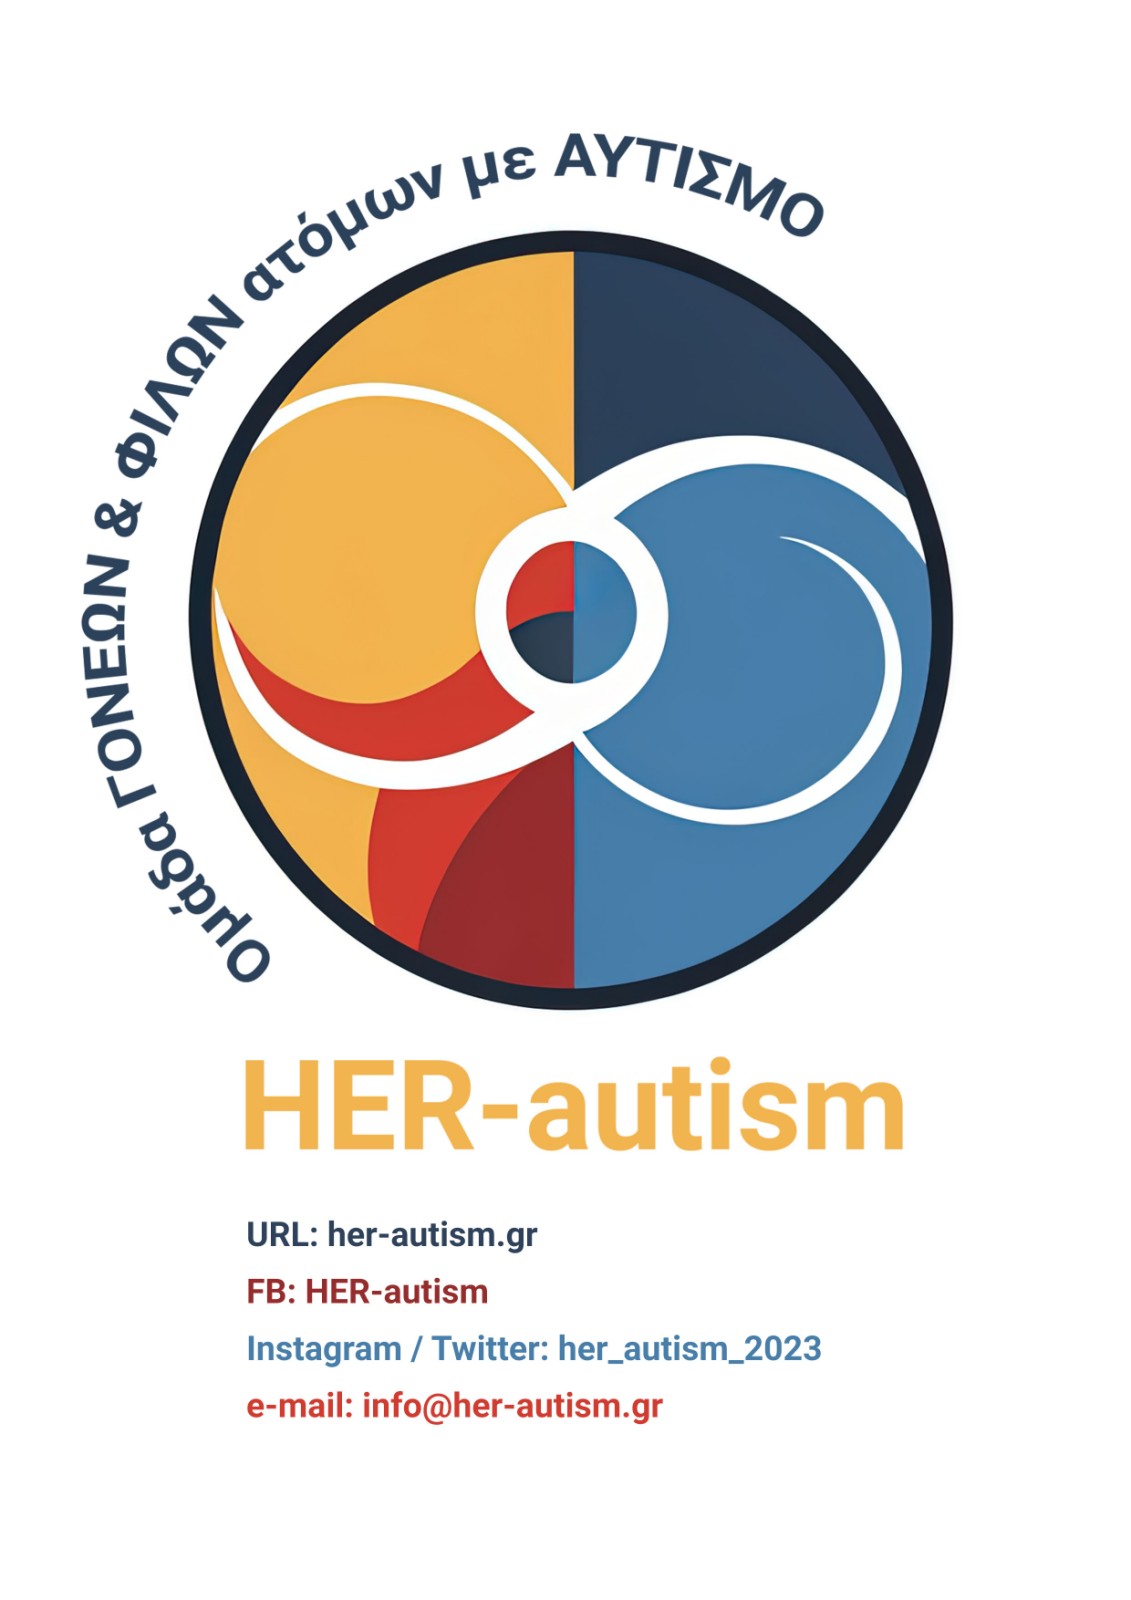 Η “HER-autism” στη Δημόσια Ψηφιακή Διαβούλευση για την Αναπηρία